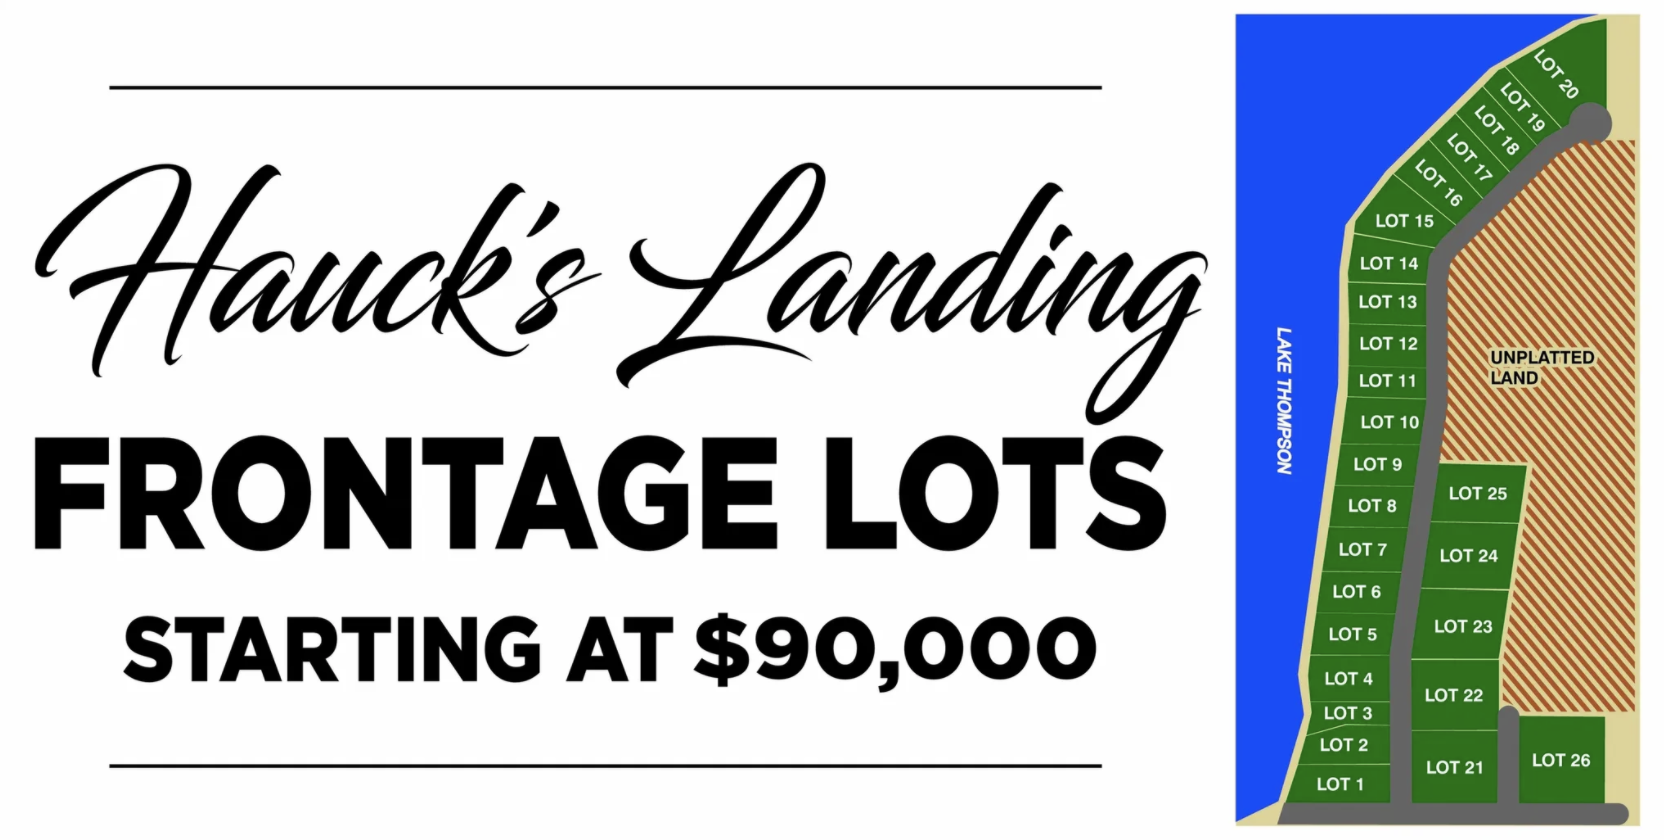 Hauck’s Landing 43958 212th St, Lake Preston South Dakota 57249